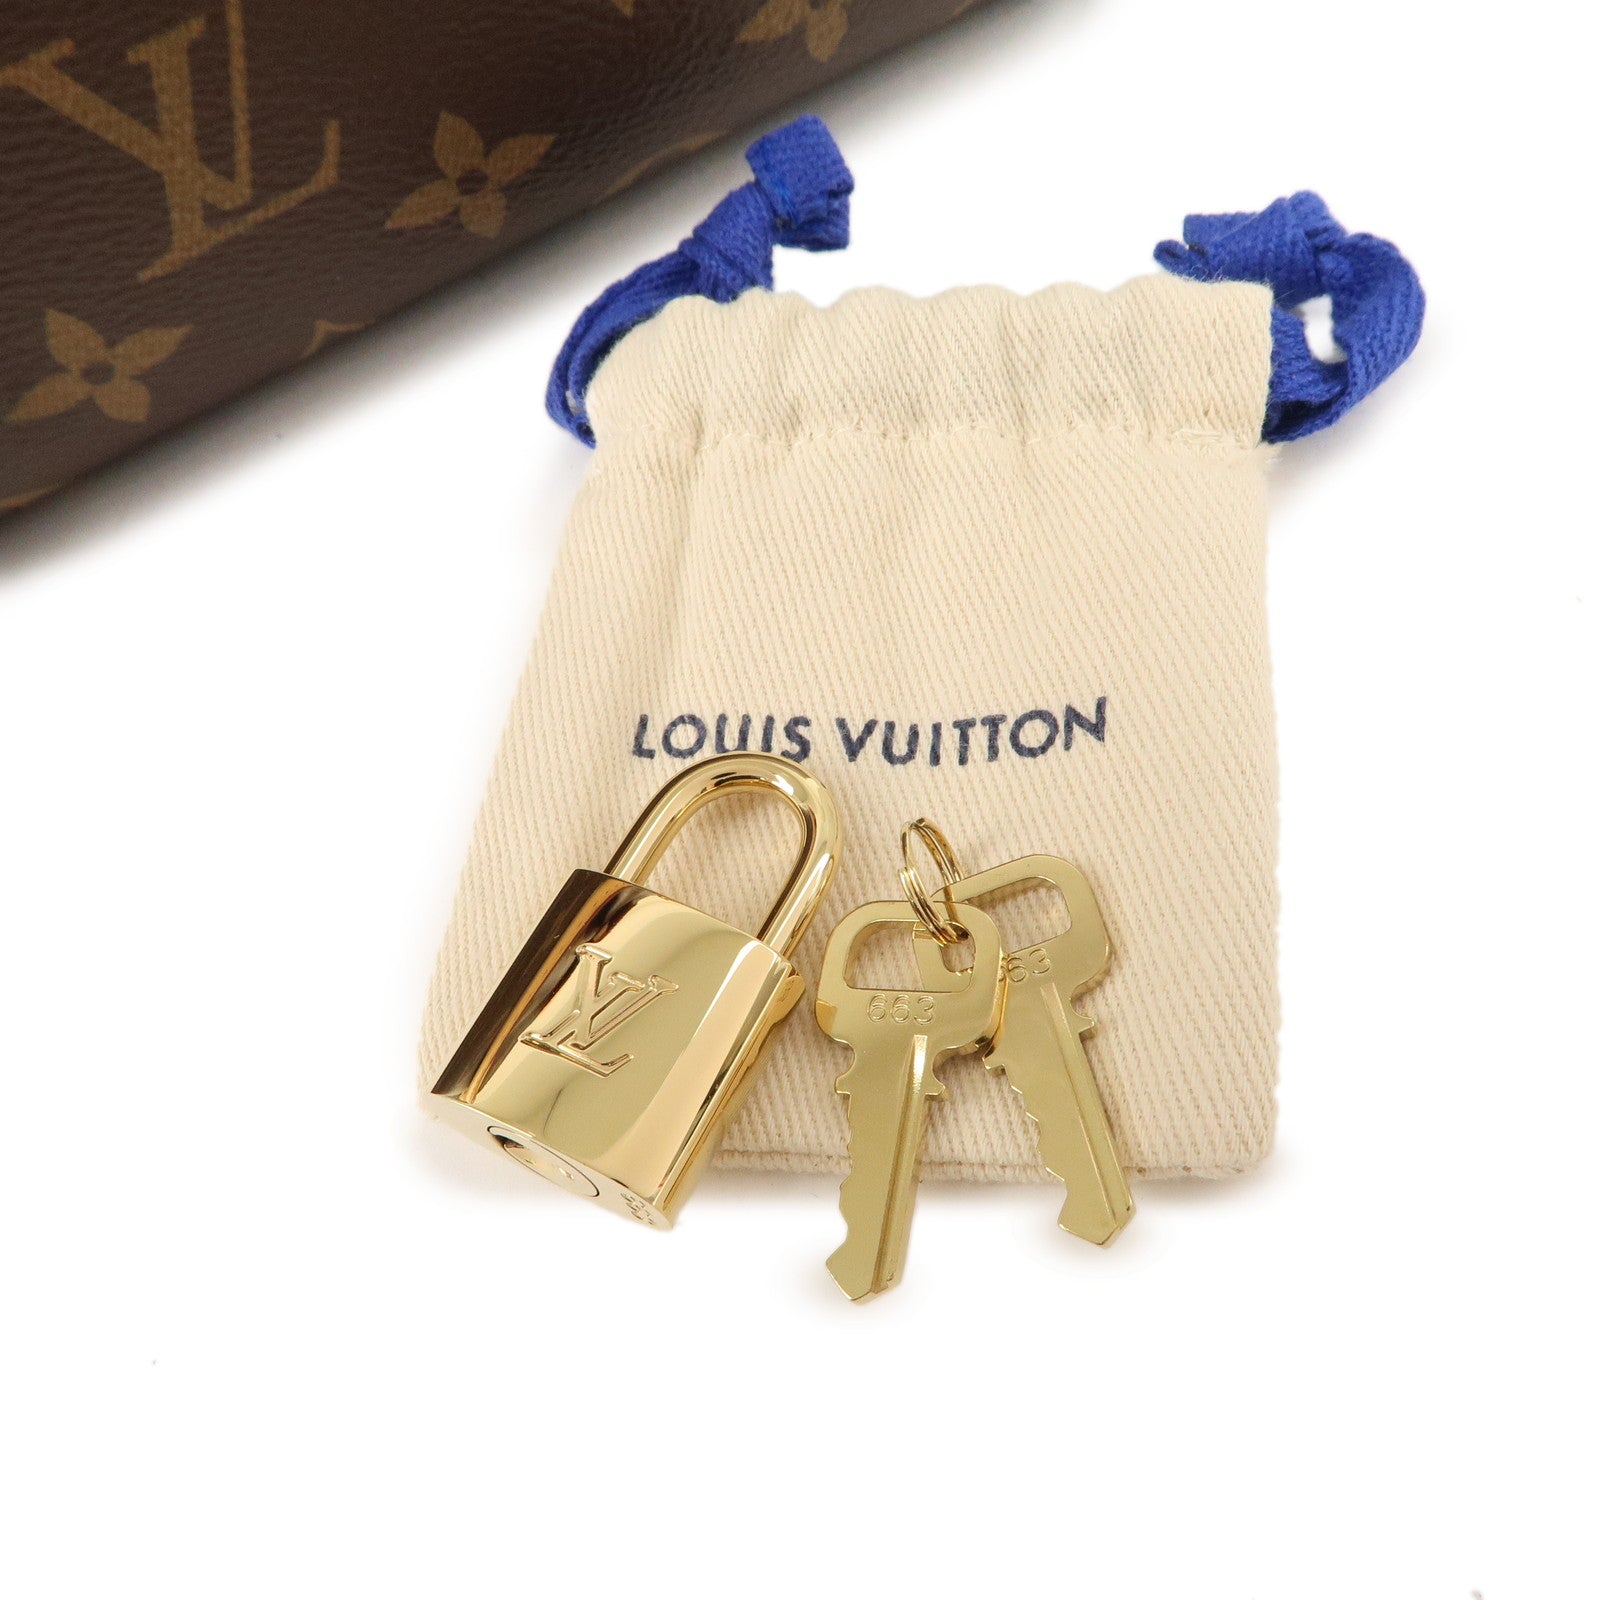 Louis Vuitton Boétie Pm (M45986)